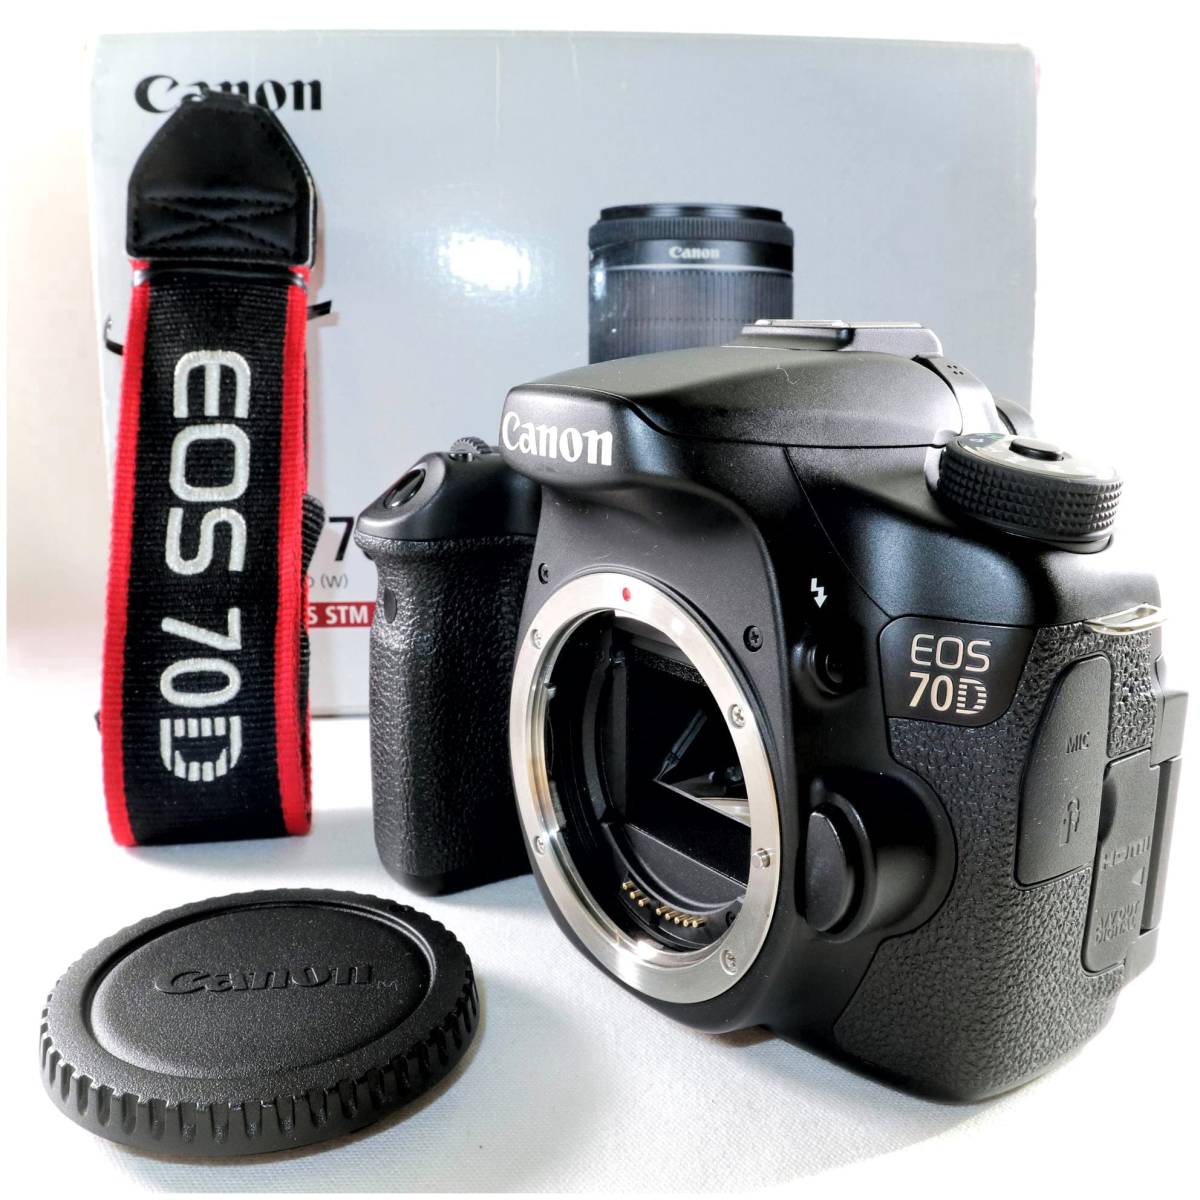 《極上美品》 デジタル一眼レフカメラ CANON EOS 70D ボディブラック キヤノン キャノン イオス 中古カメラ k2444